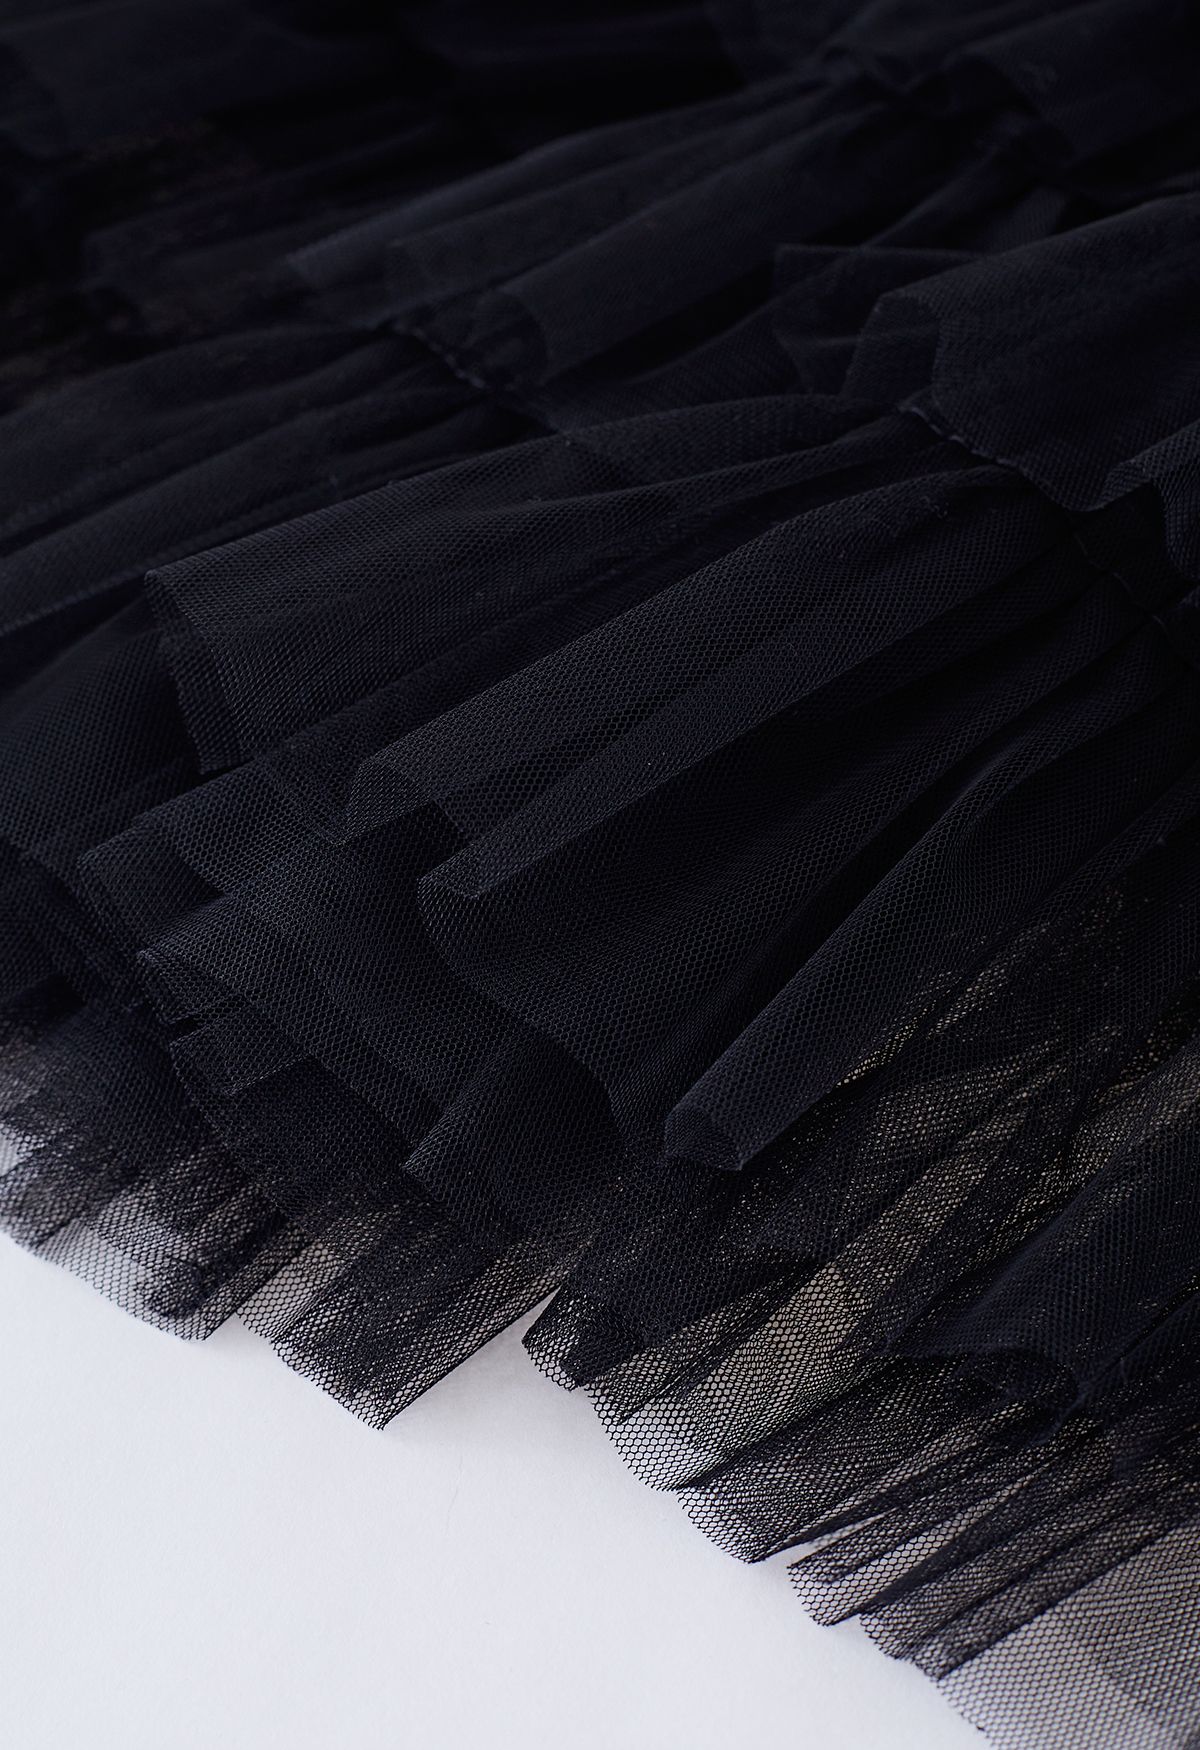 Swan Cloud Midi Skirt in Black